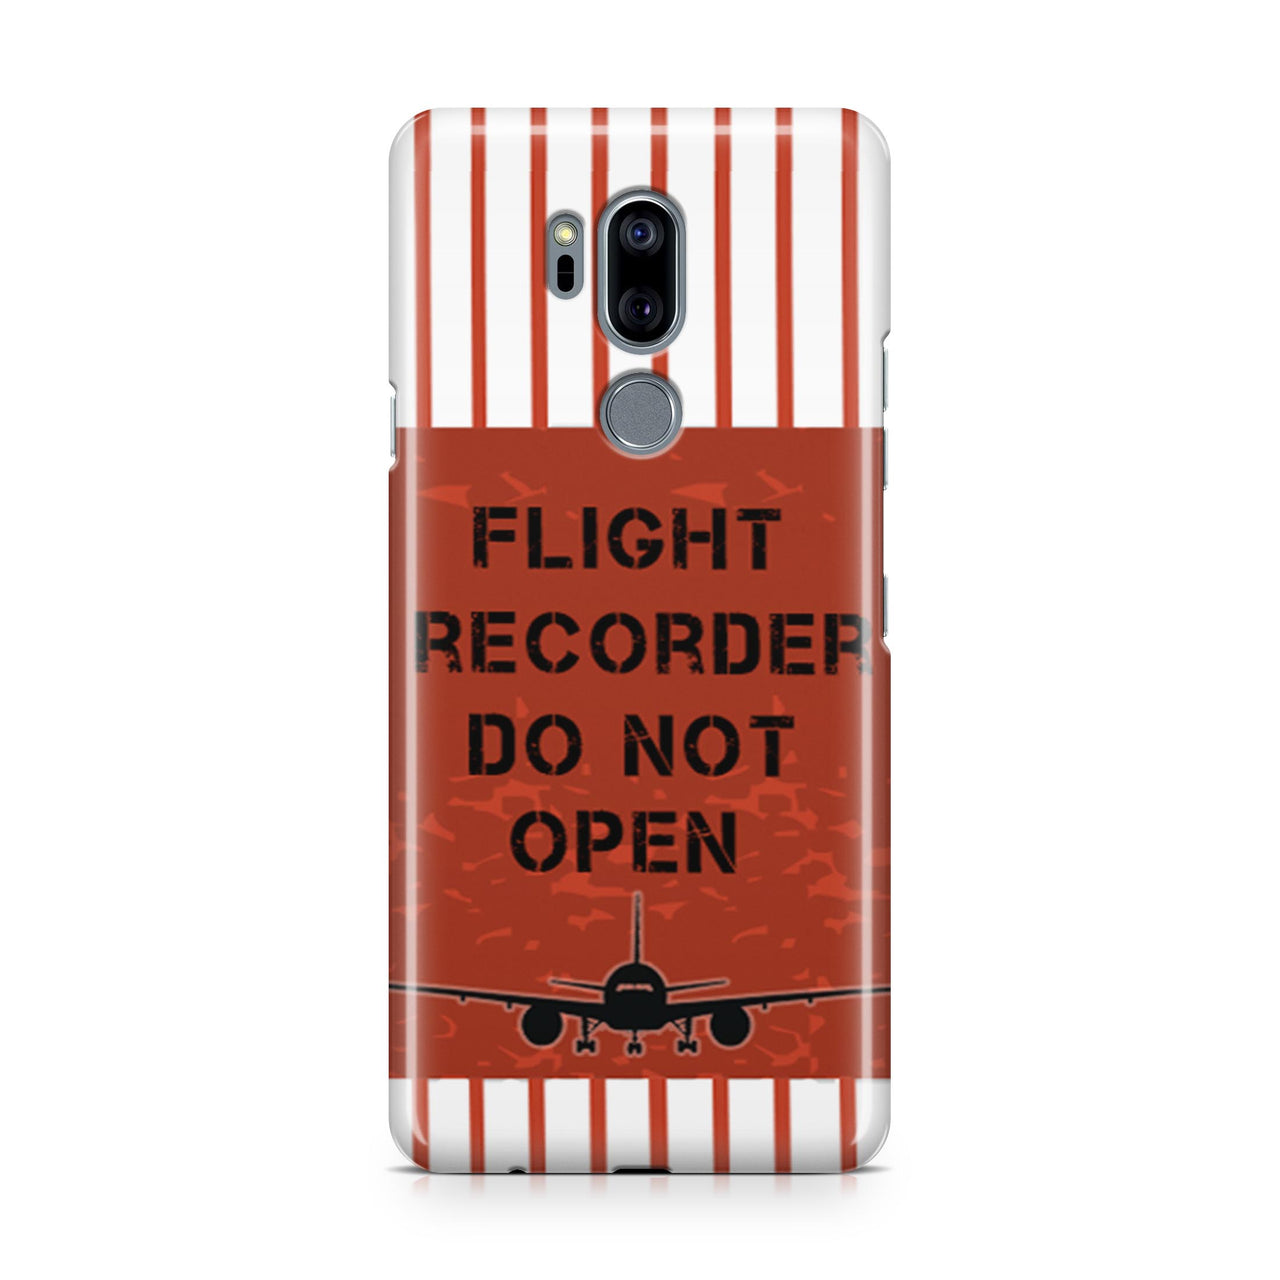 Flight Recorder Do Not Open Designed LG Cases